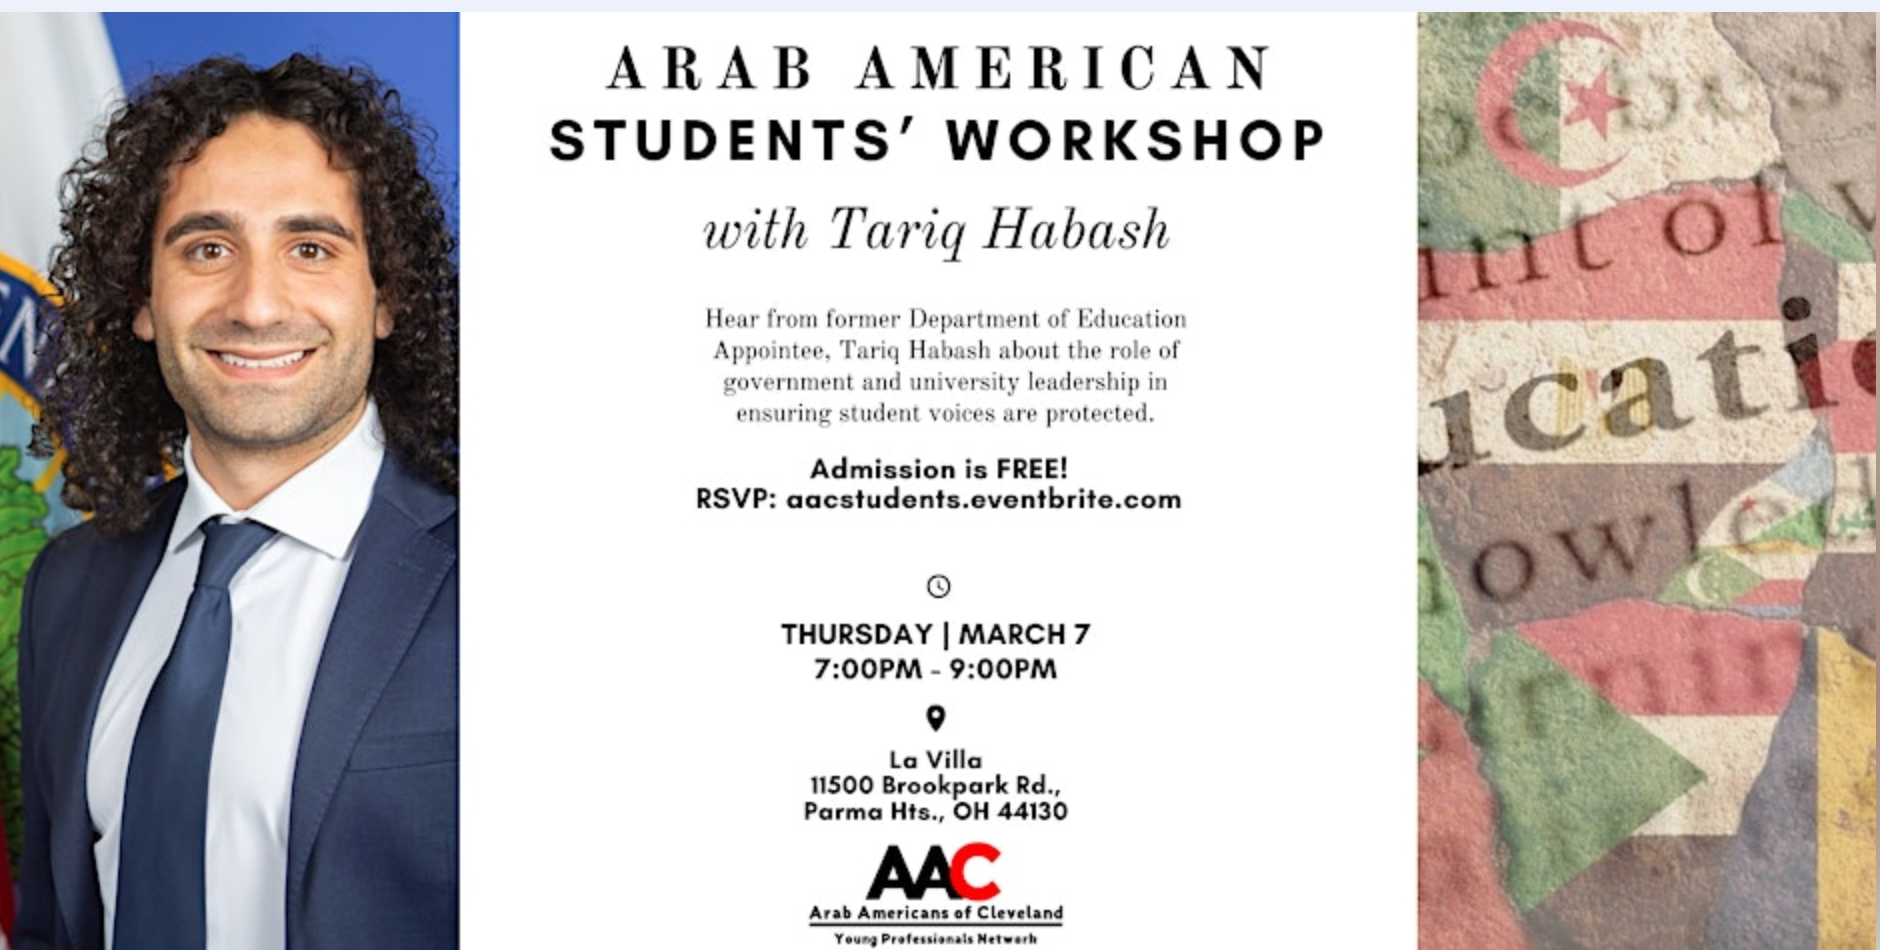 Arab American Students' Workshop with Tariq Habash.